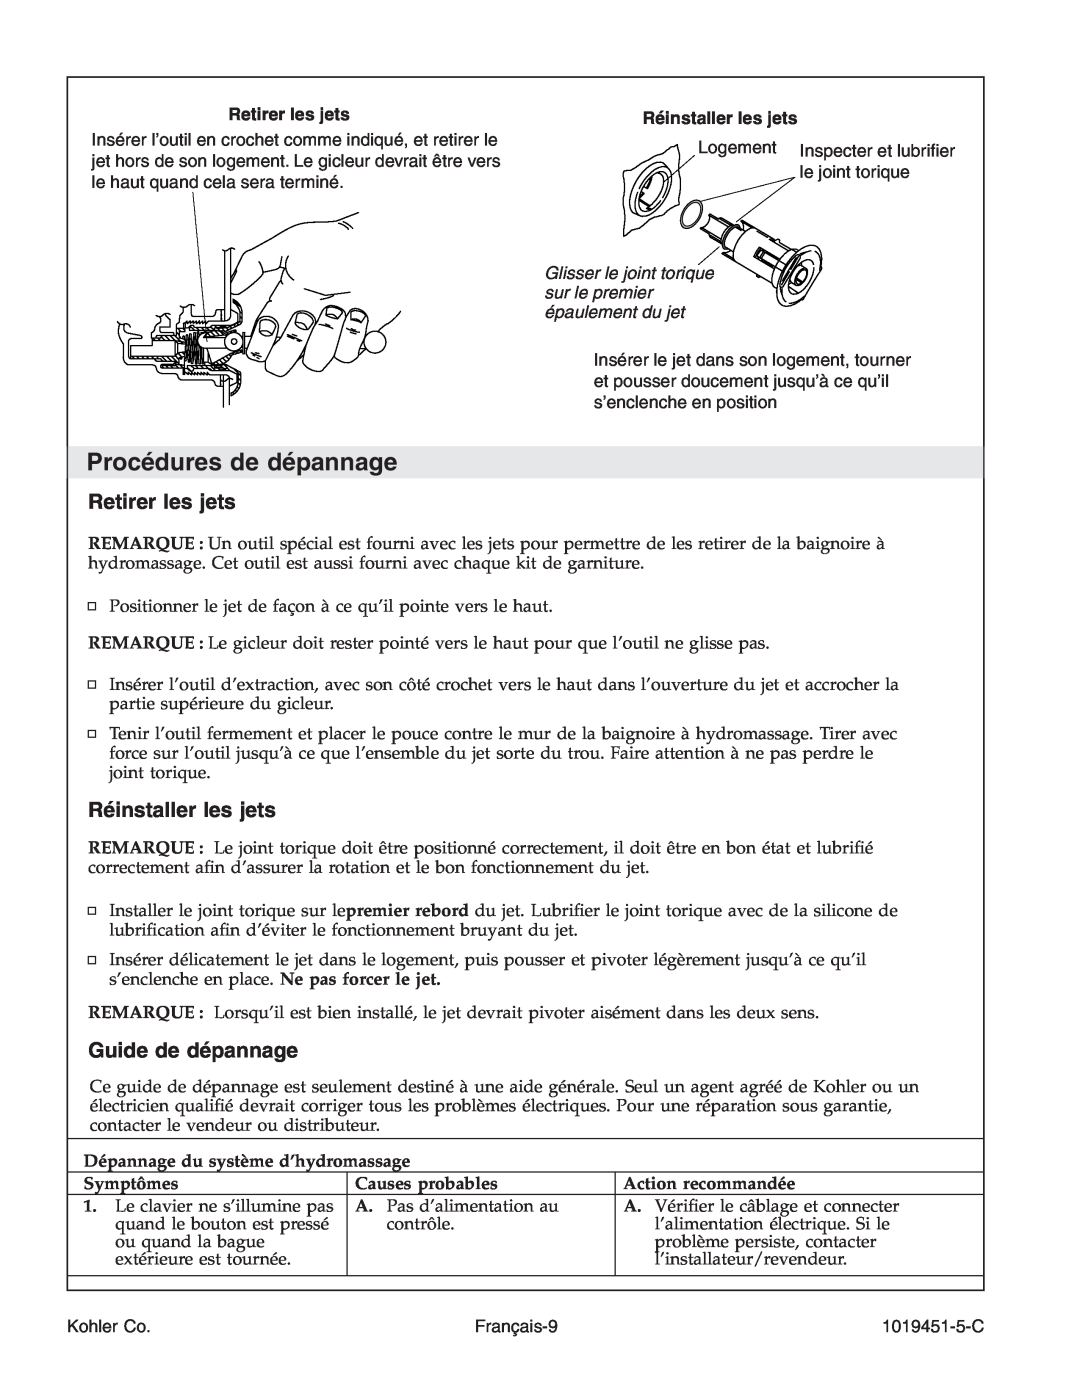 Kohler K-865 manual Procédures de dépannage, Retirer les jets, Réinstaller les jets, Guide de dépannage 